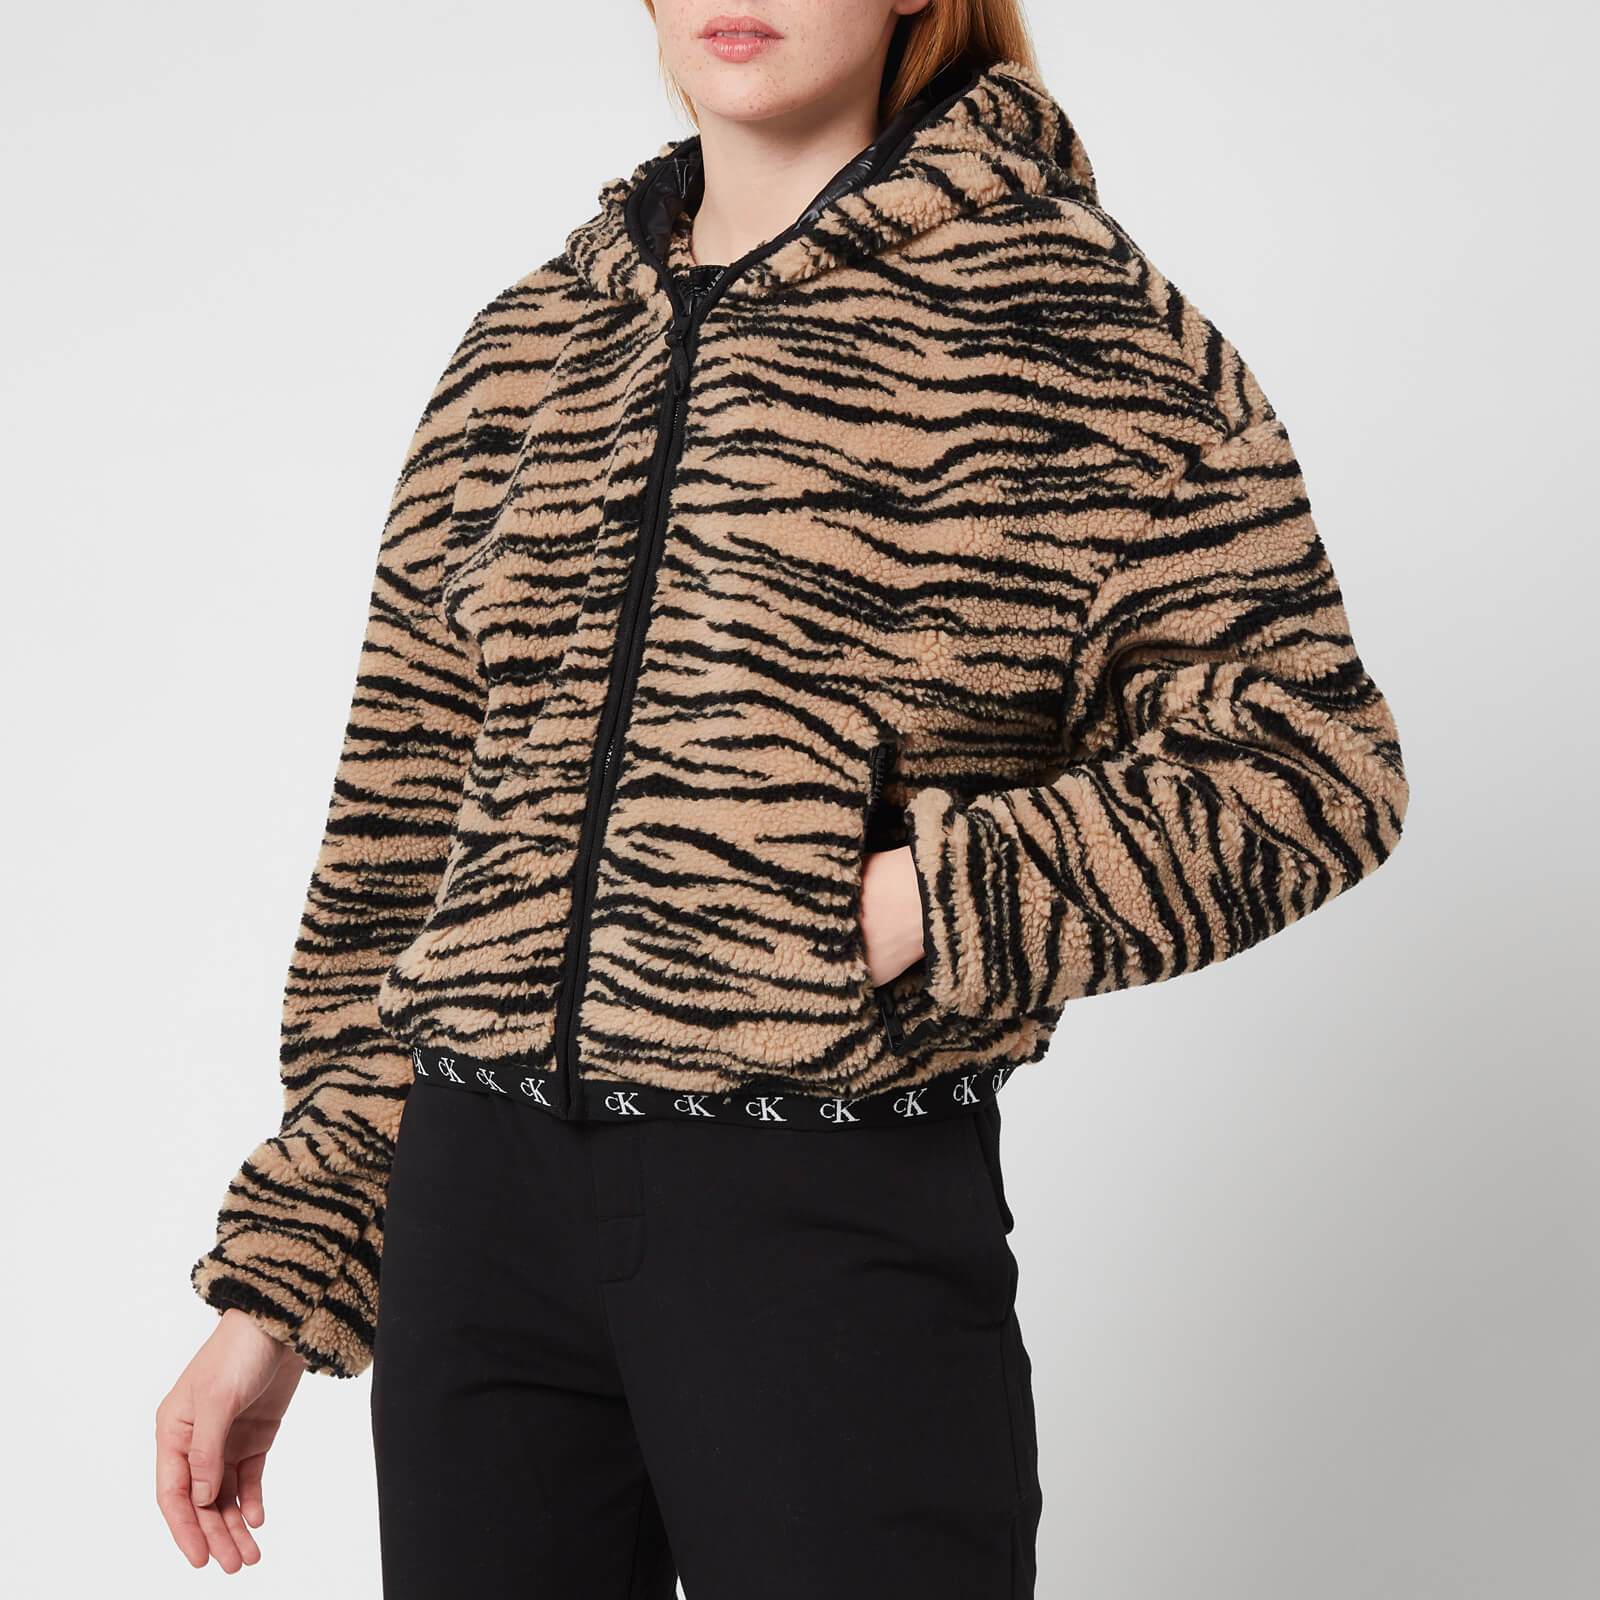 Calvin Klein Jeans Women's Zebra Sherpa Jacket - Zebra Aop Irish Cream Black - XS